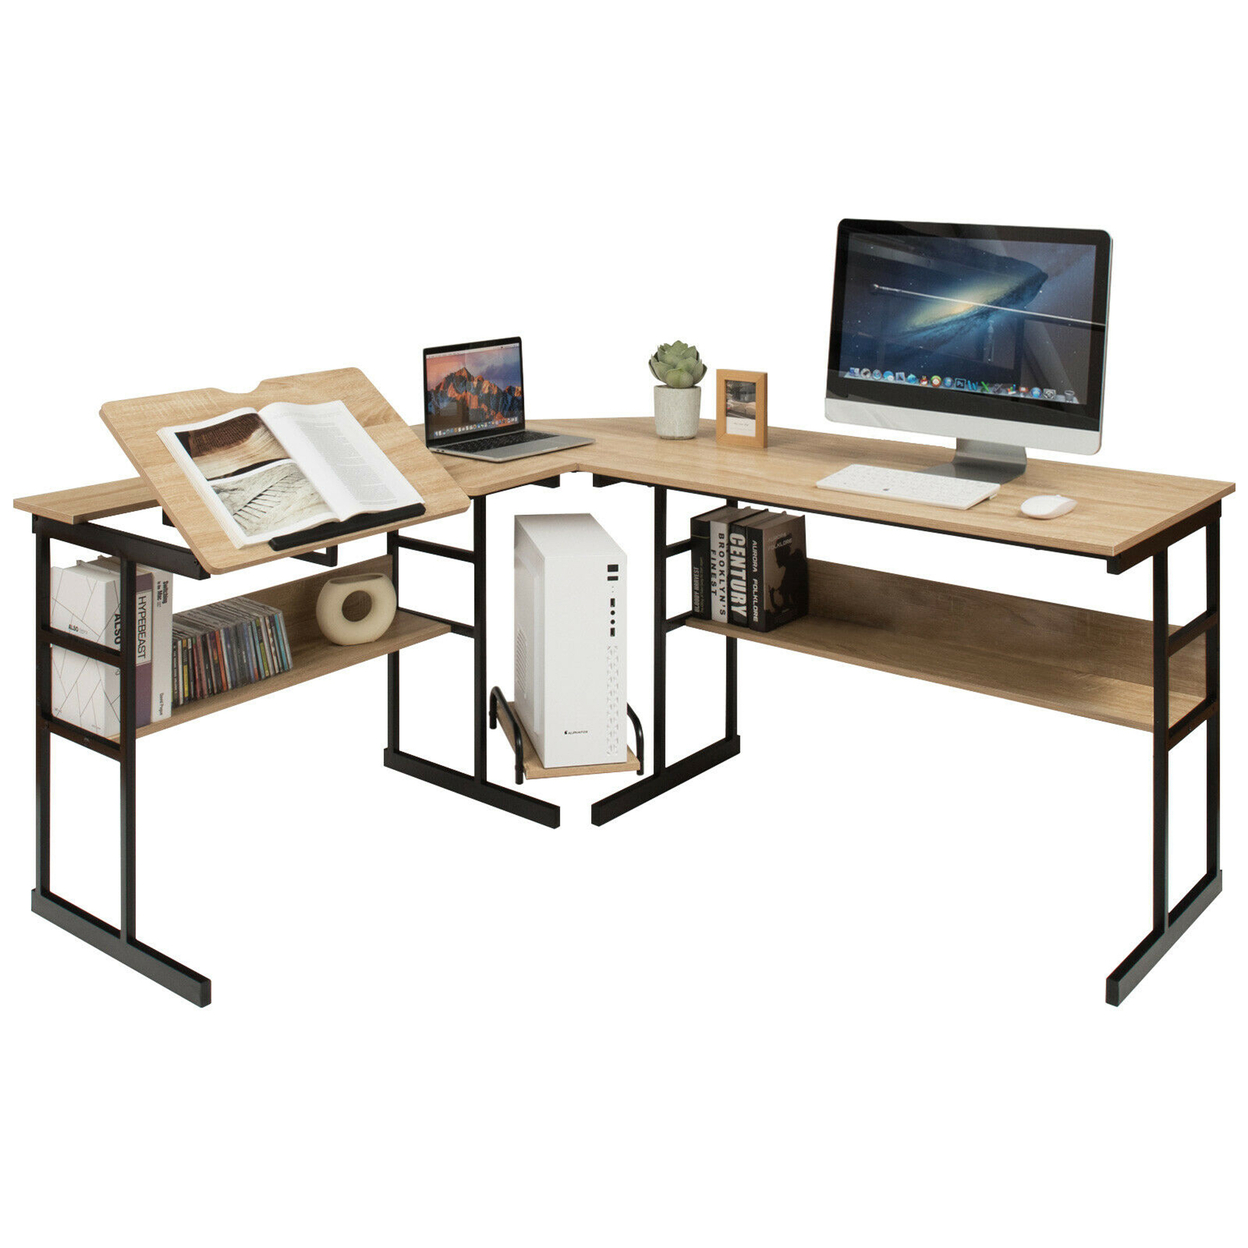 L-Shaped Computer Desk Drafting Table Workstation W/ Tiltable Tabletop - Natural